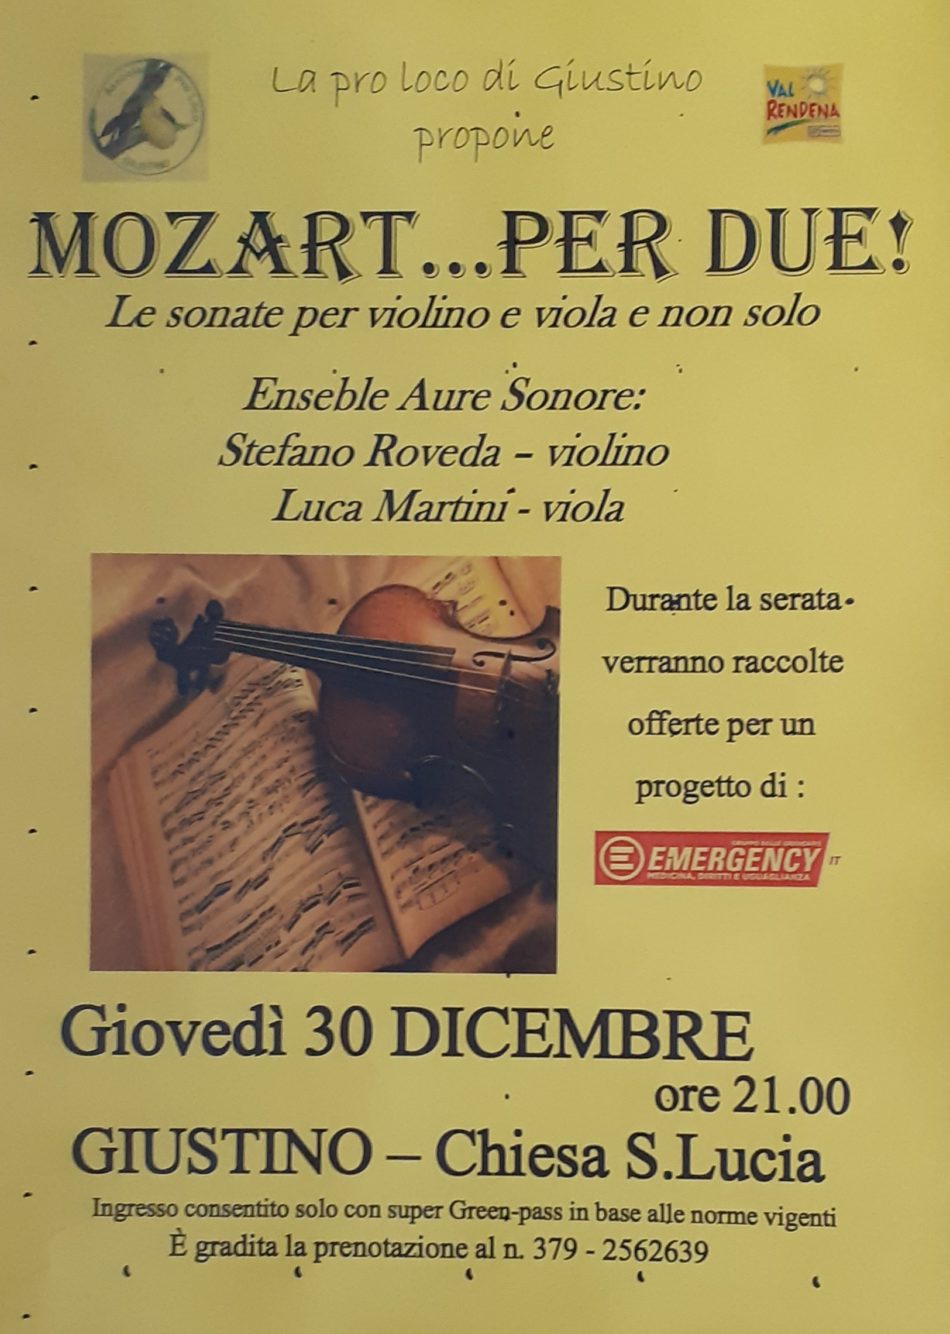 Giustino, 30 dicembre: Mozart… per due